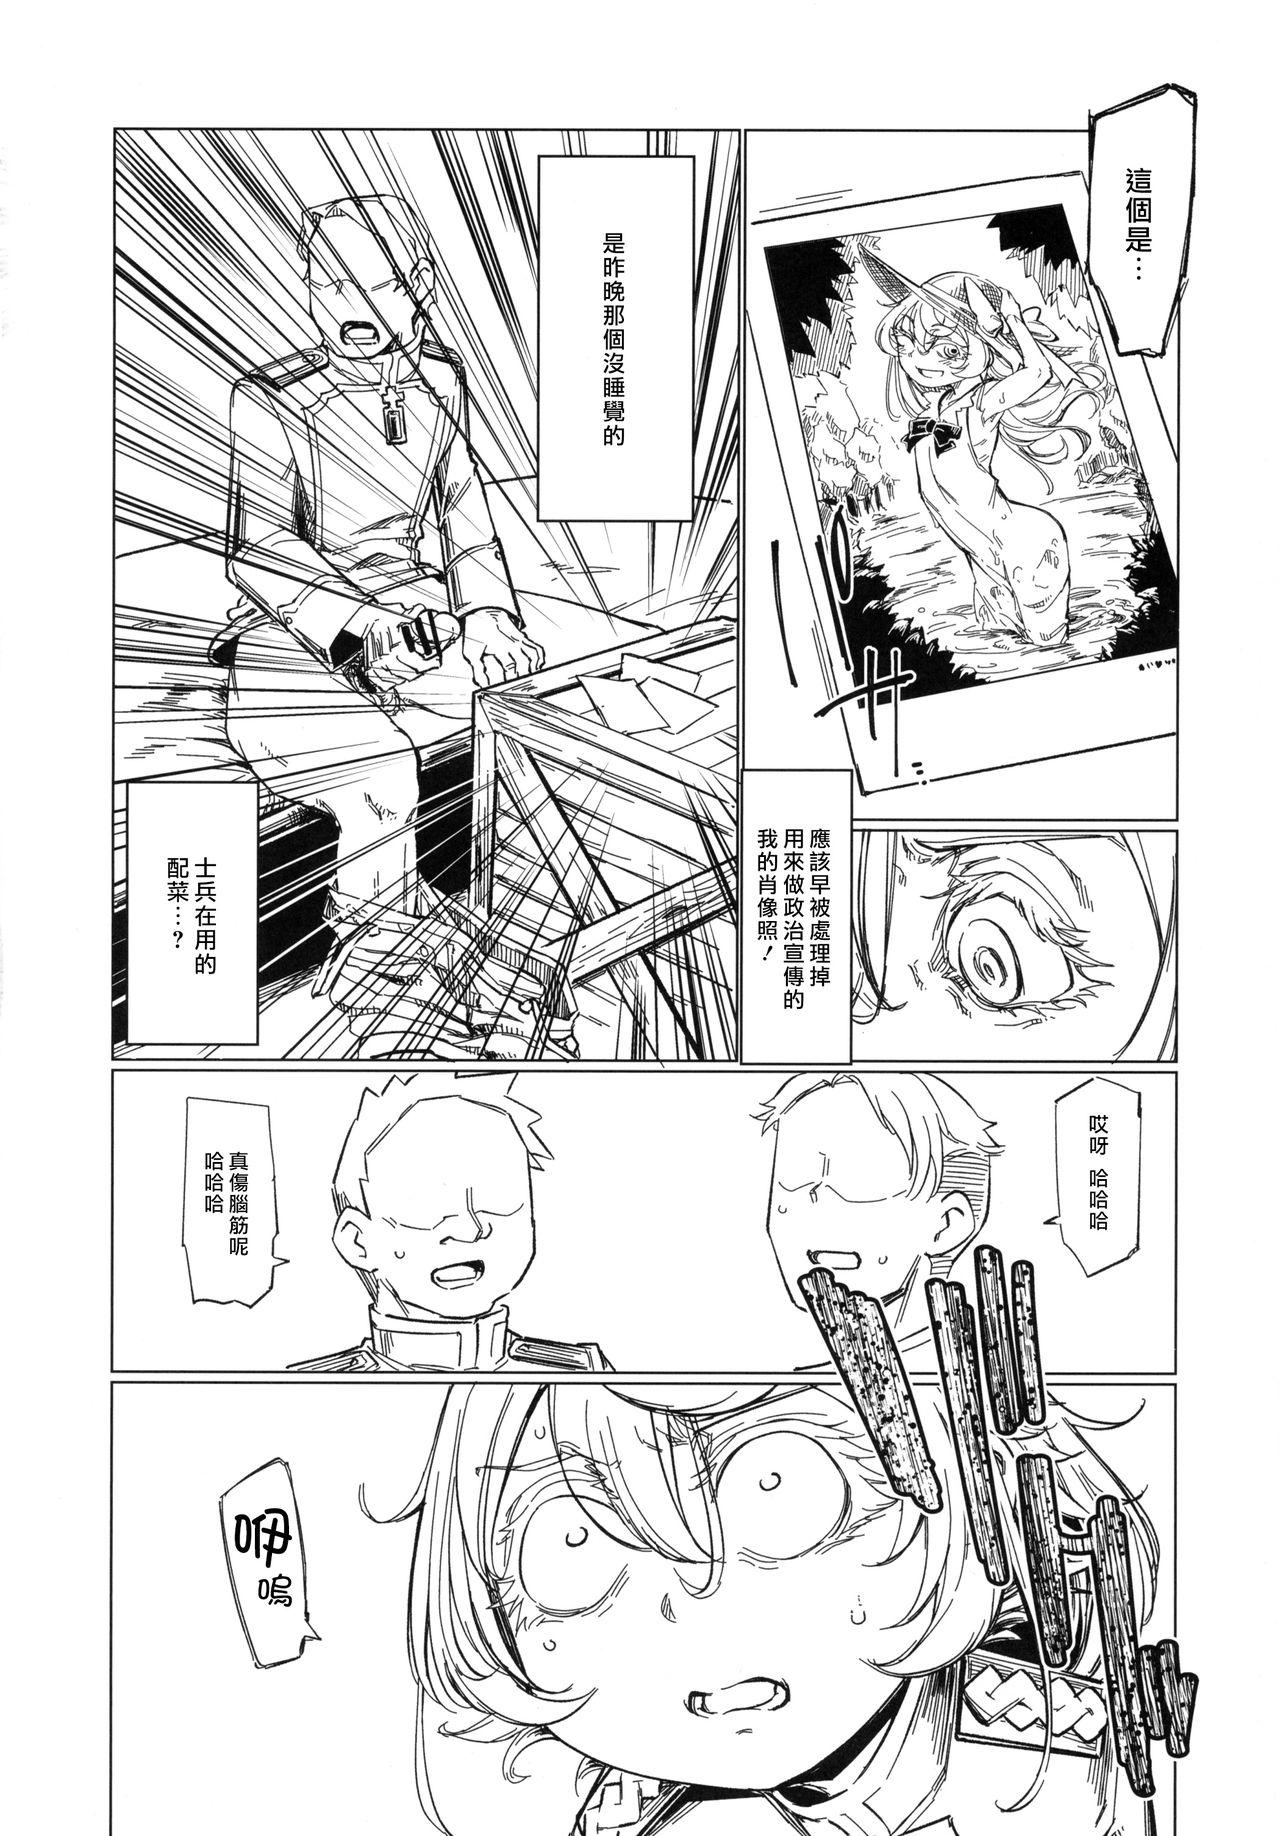 Neighbor Saizensen no Degrechaf Ojisan - Youjo senki Sextoy - Page 9